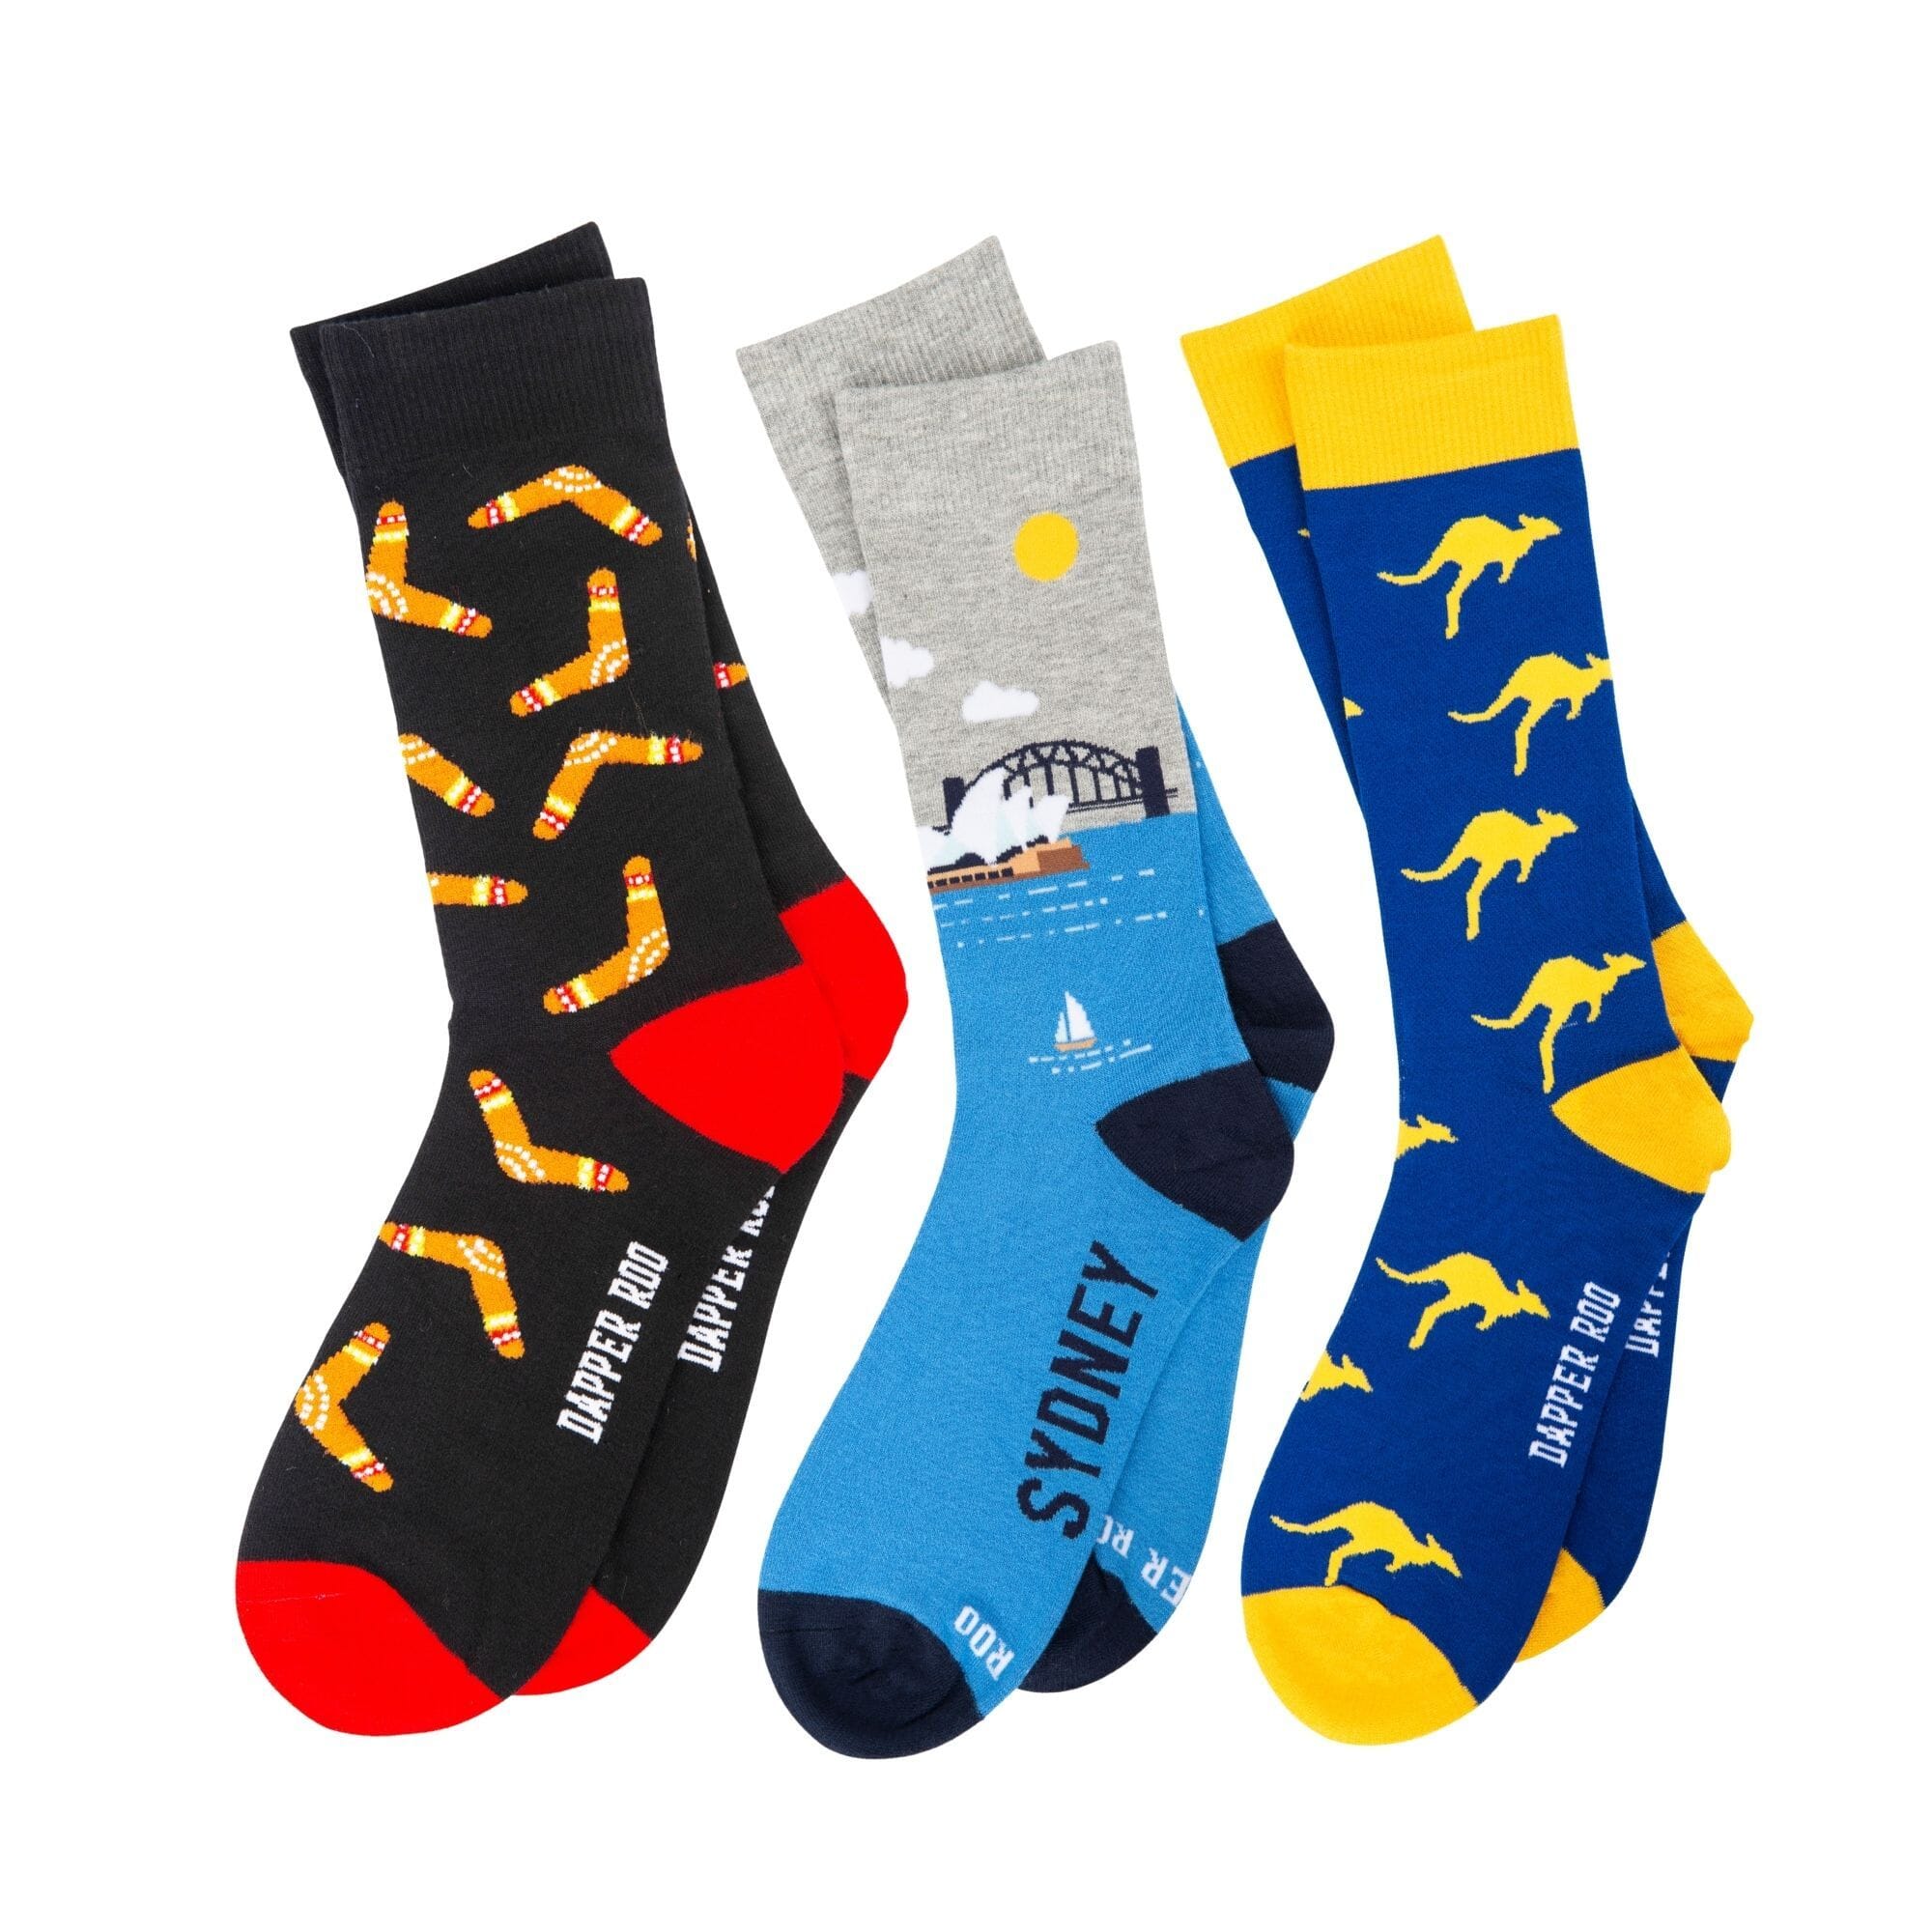 Aussie Socks Gift Set Gift Set Clinks 